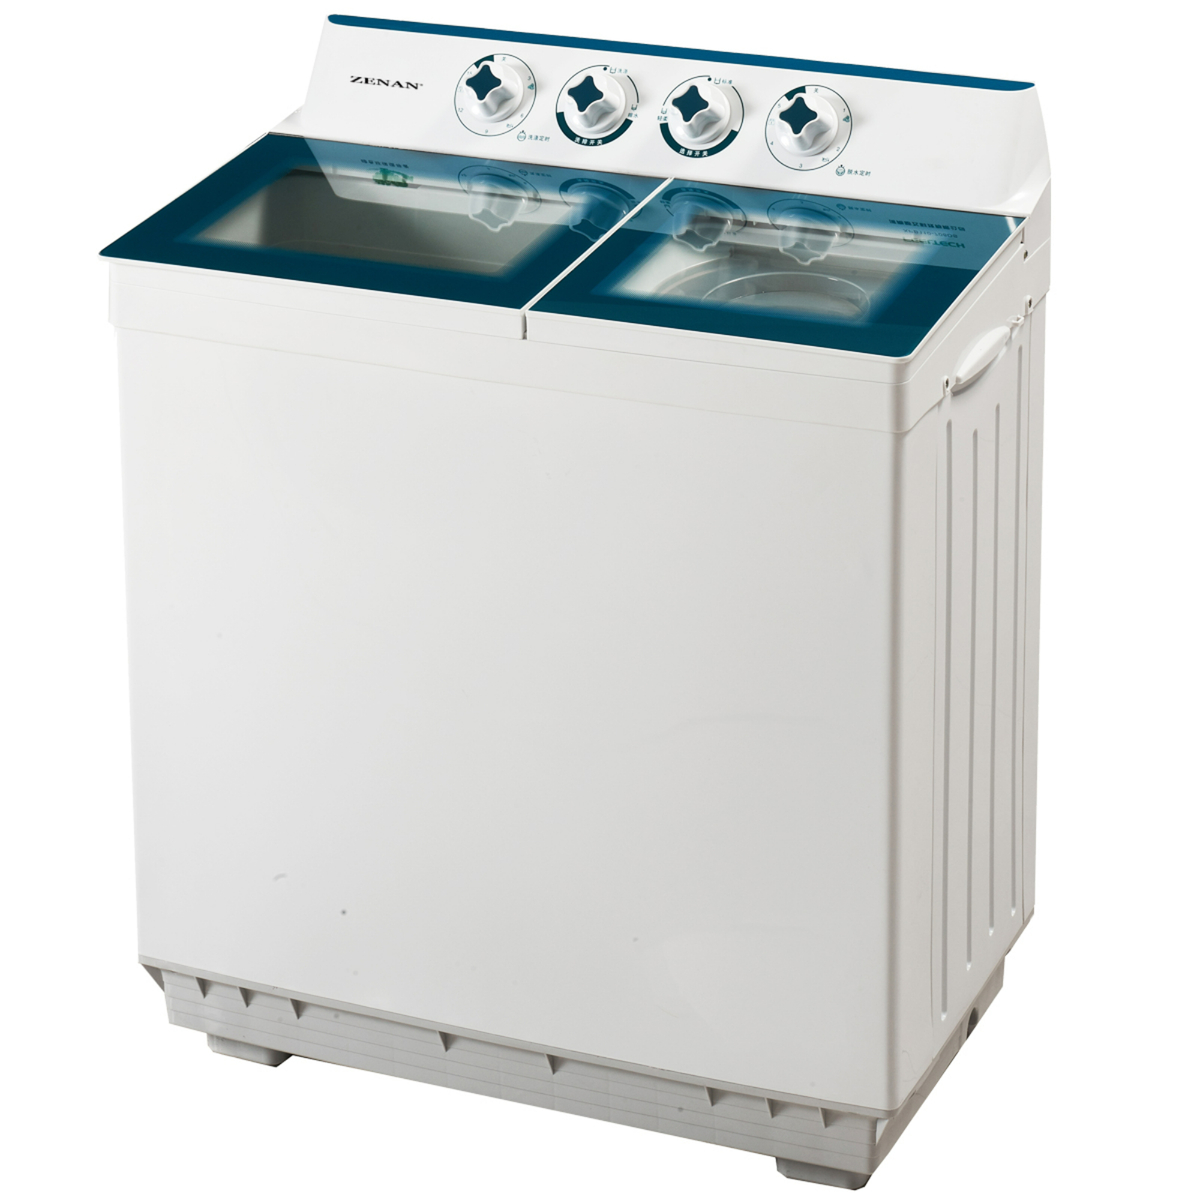 Zenan Twin Tub Washing Machine, 10/6 kg, White, ZWM10-PGSA